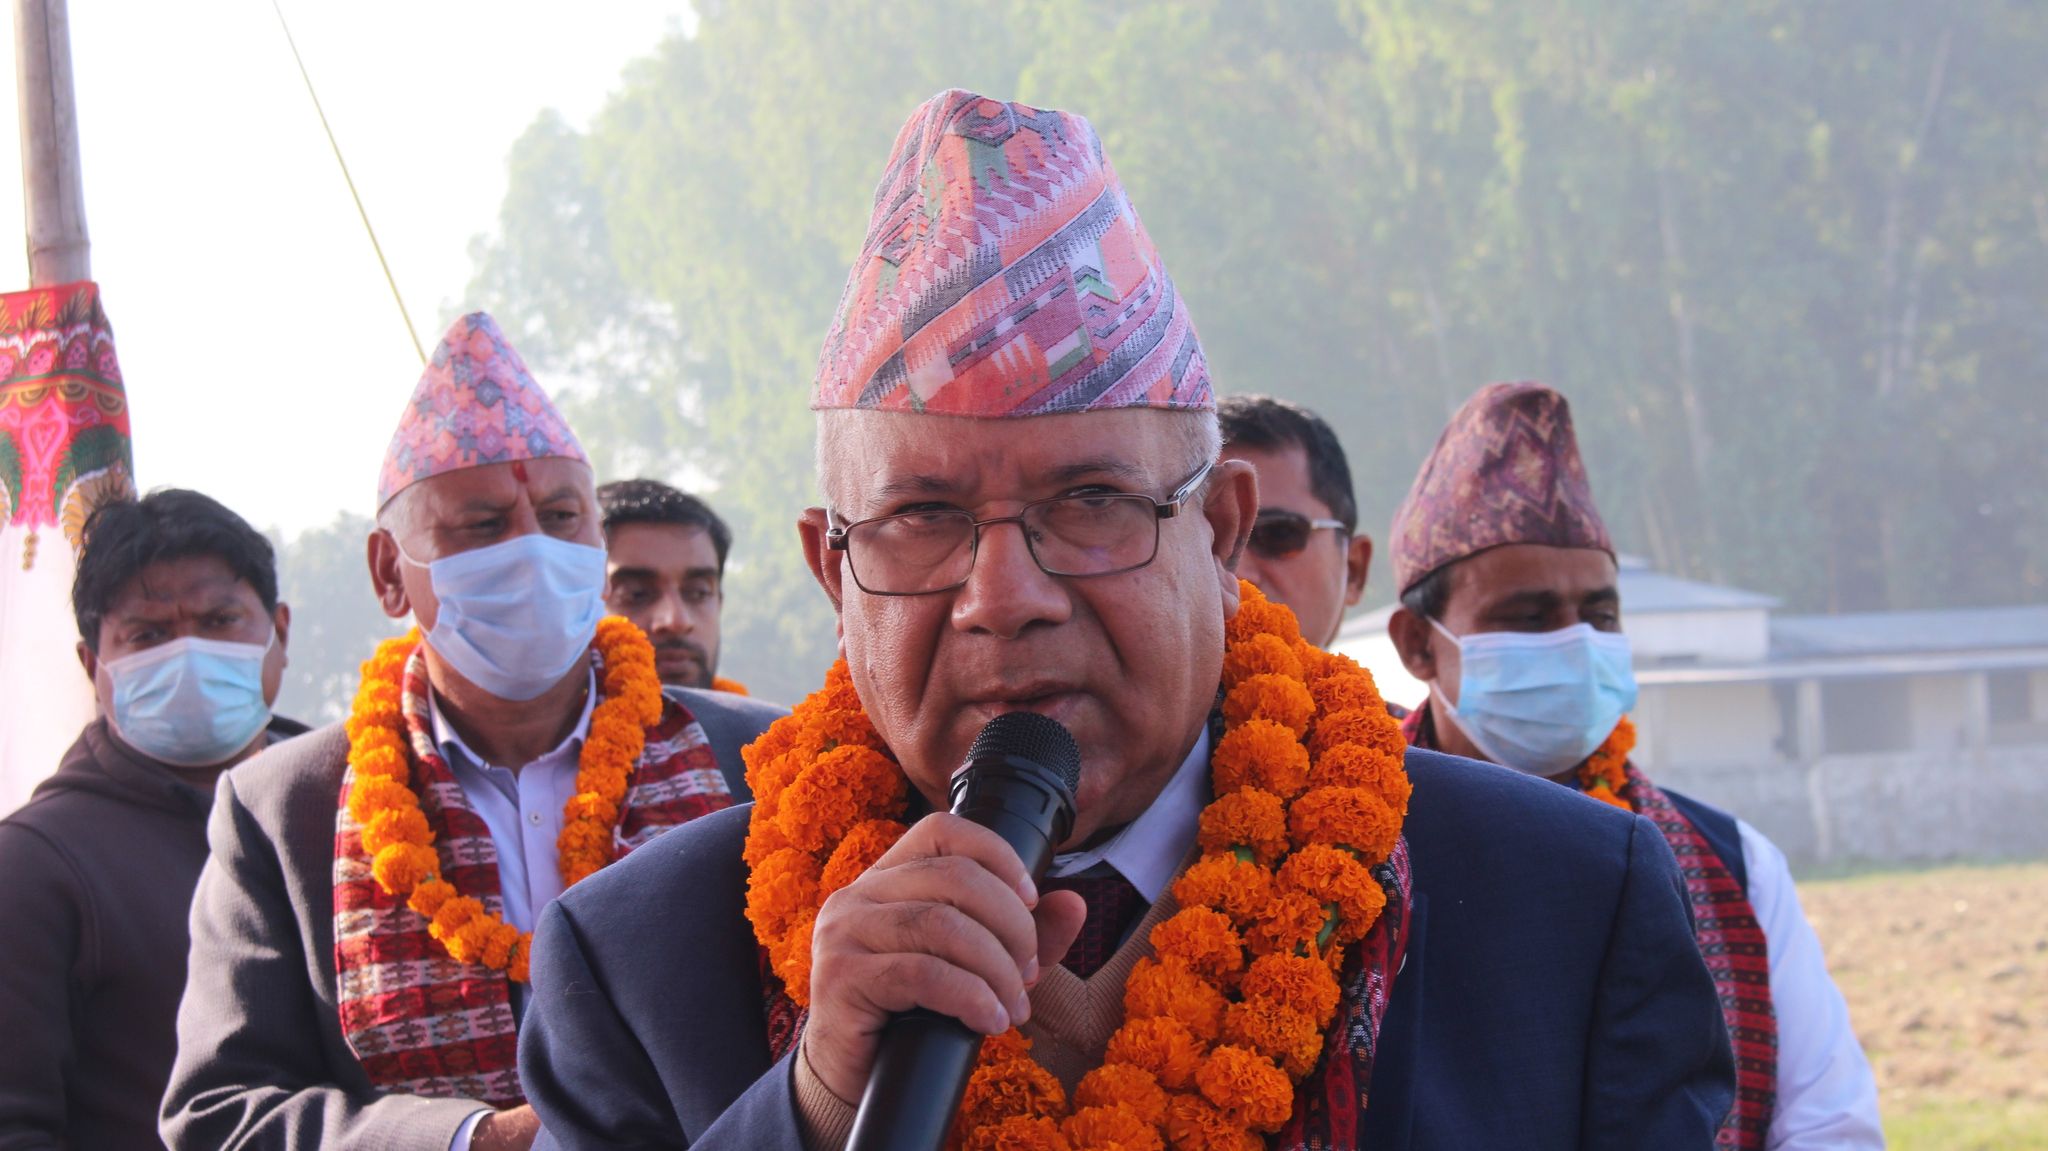 बागी उम्मेदवारलाई कारबाही गरिएन भने अविश्वास पैदा हुन्छ : माधव नेपाल